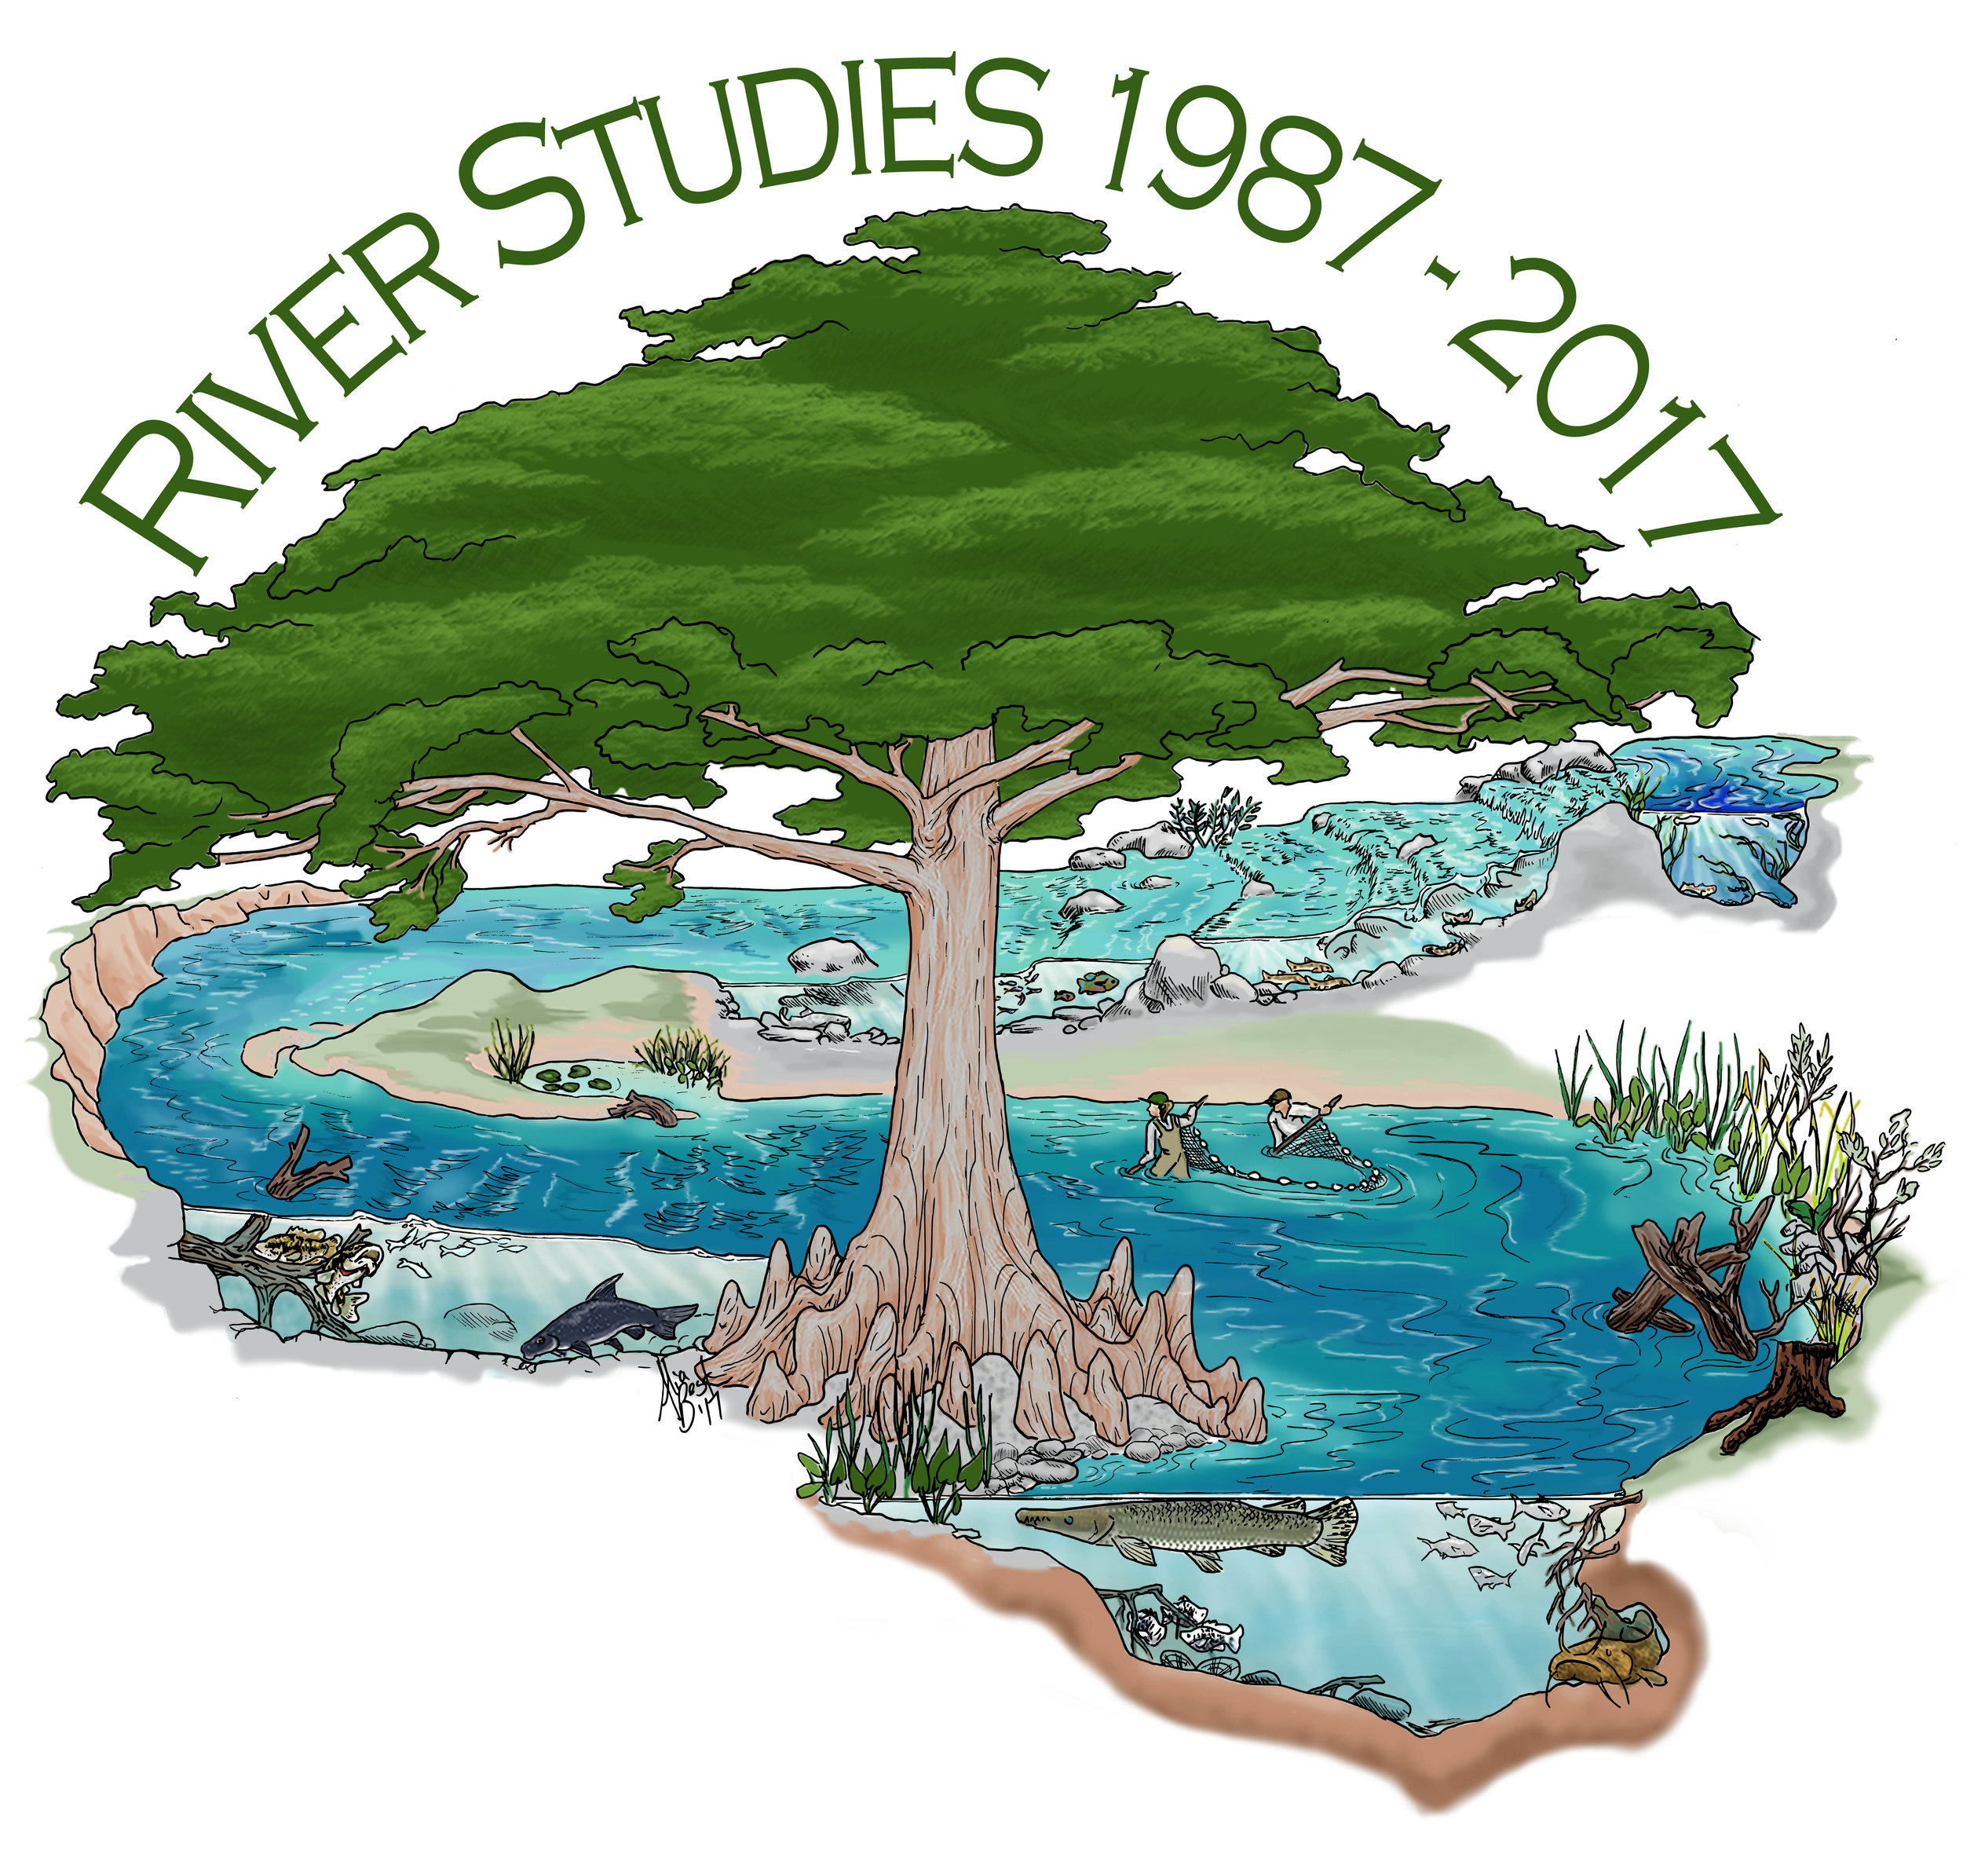 30 Years of River Studies